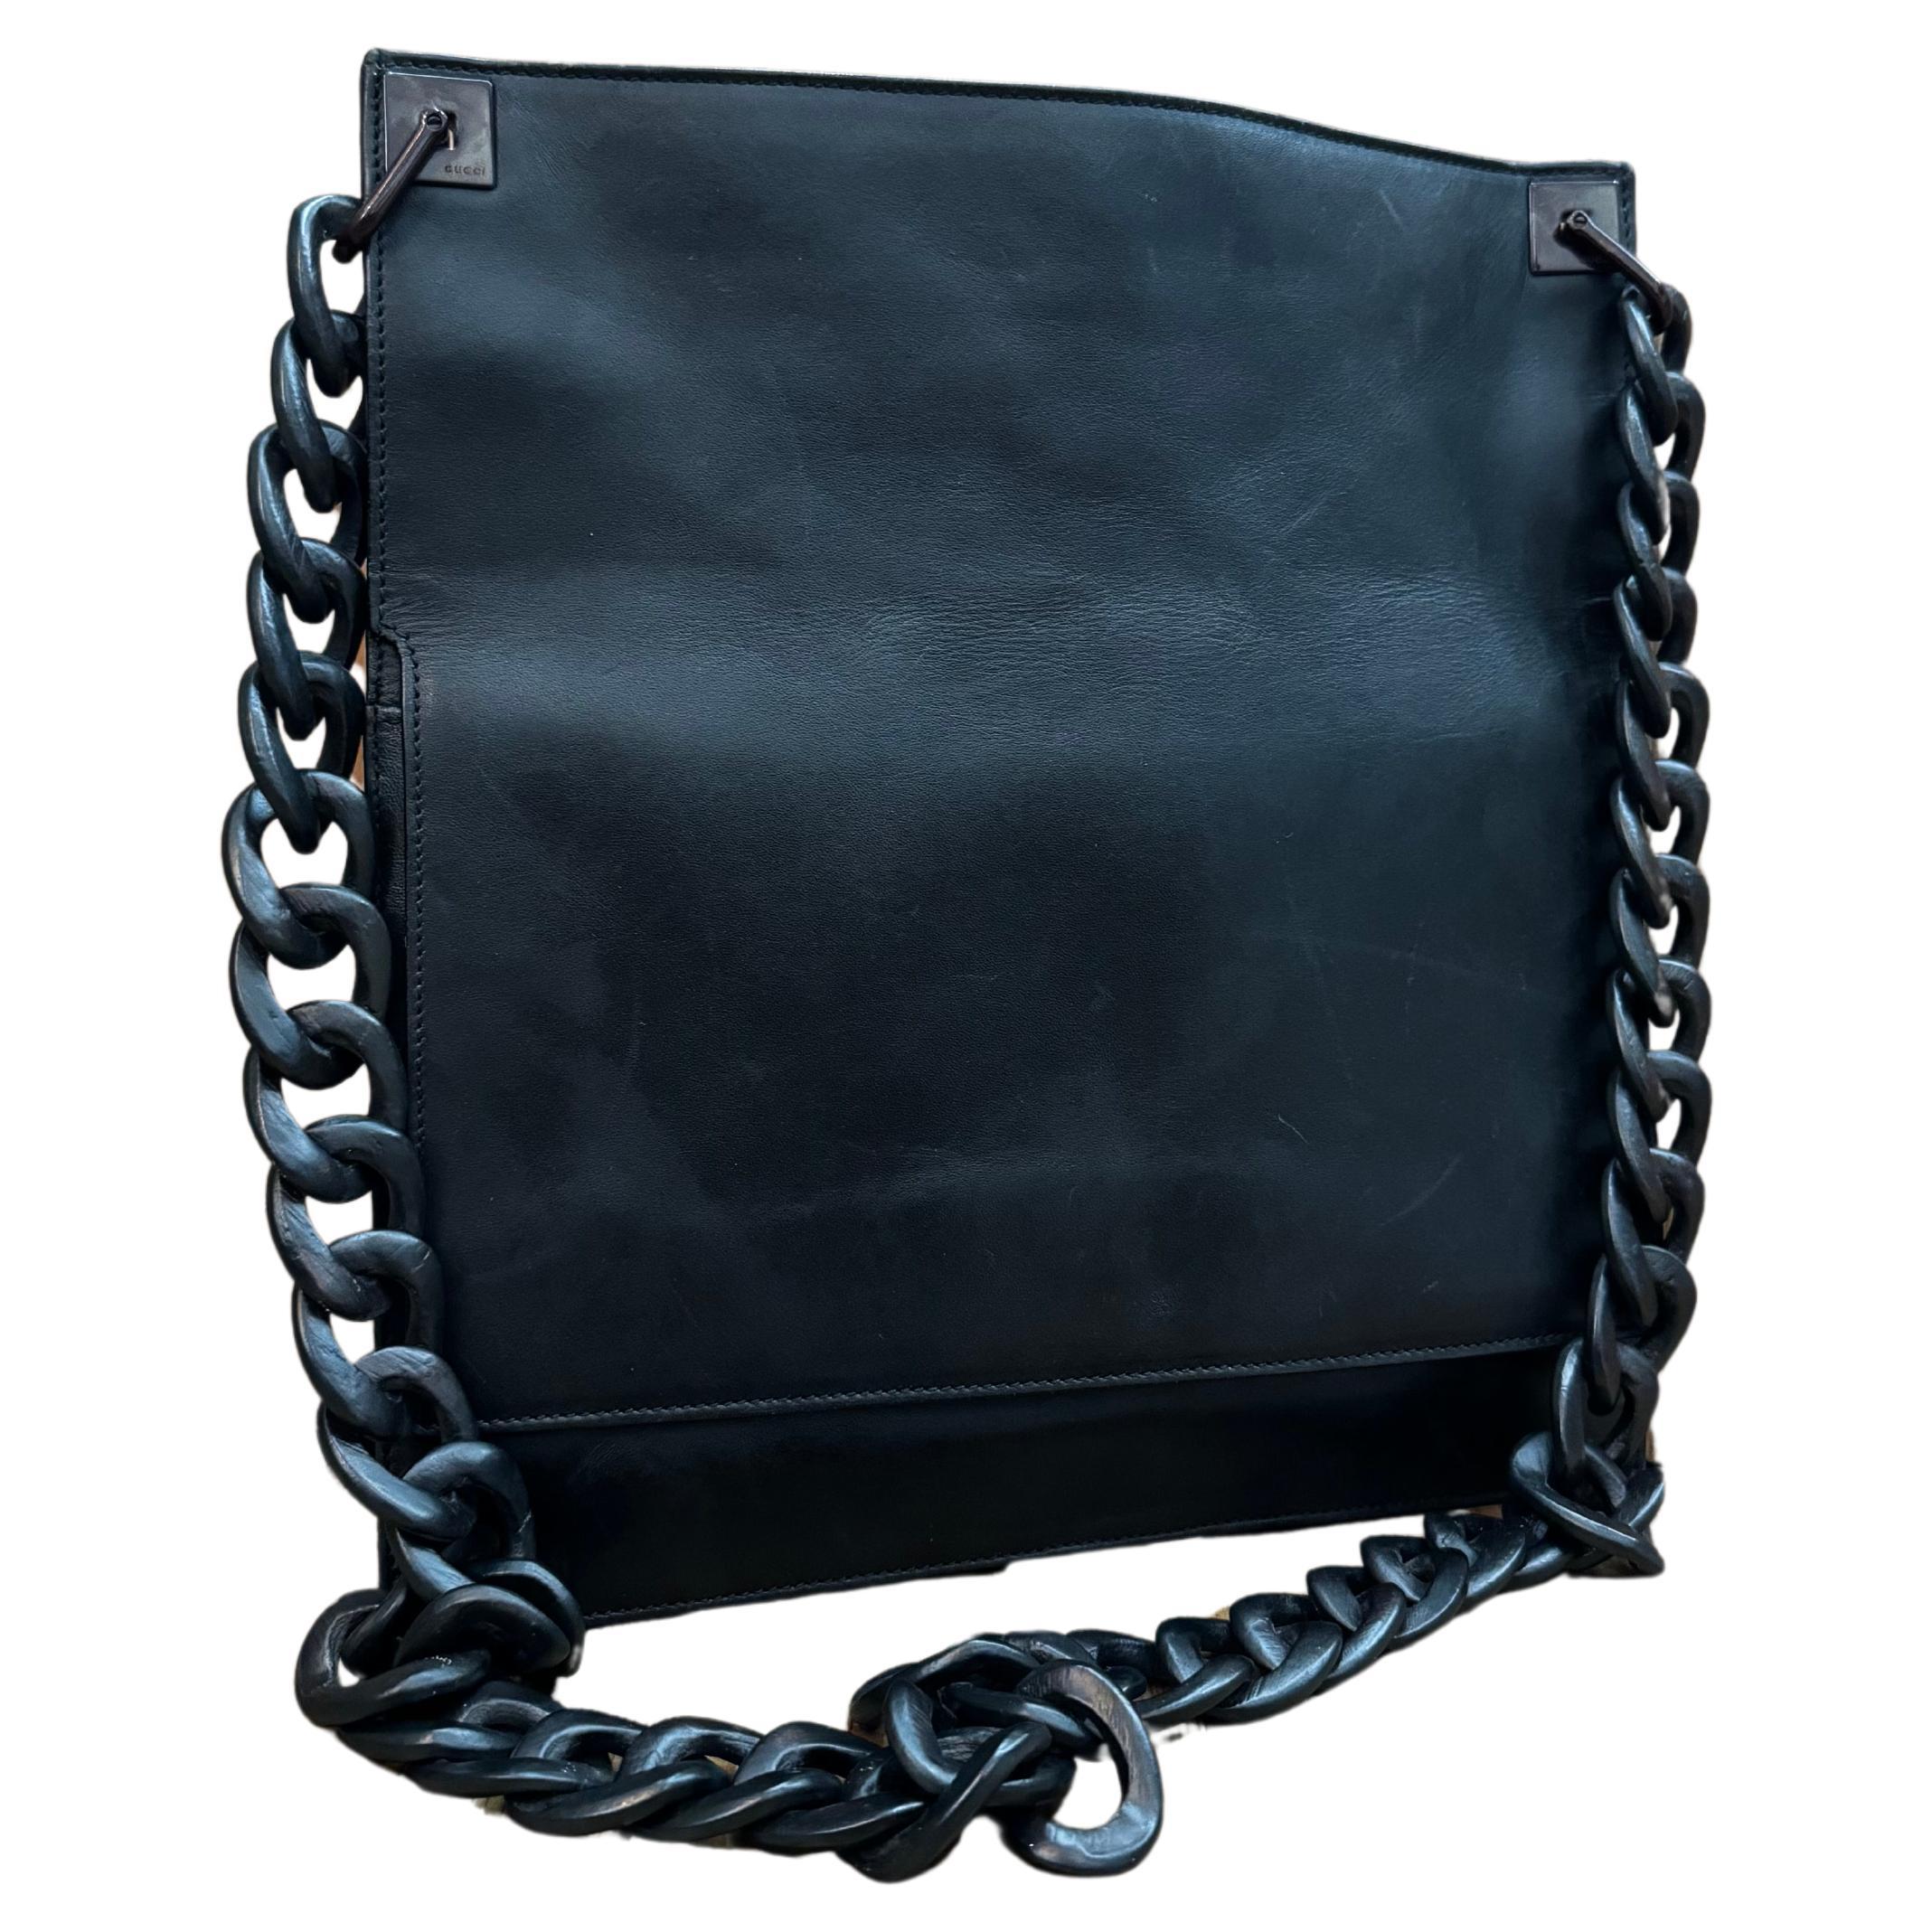 2000s Vintage GUCCI Calfskin Leather Flat Messenger Bag Black Wood